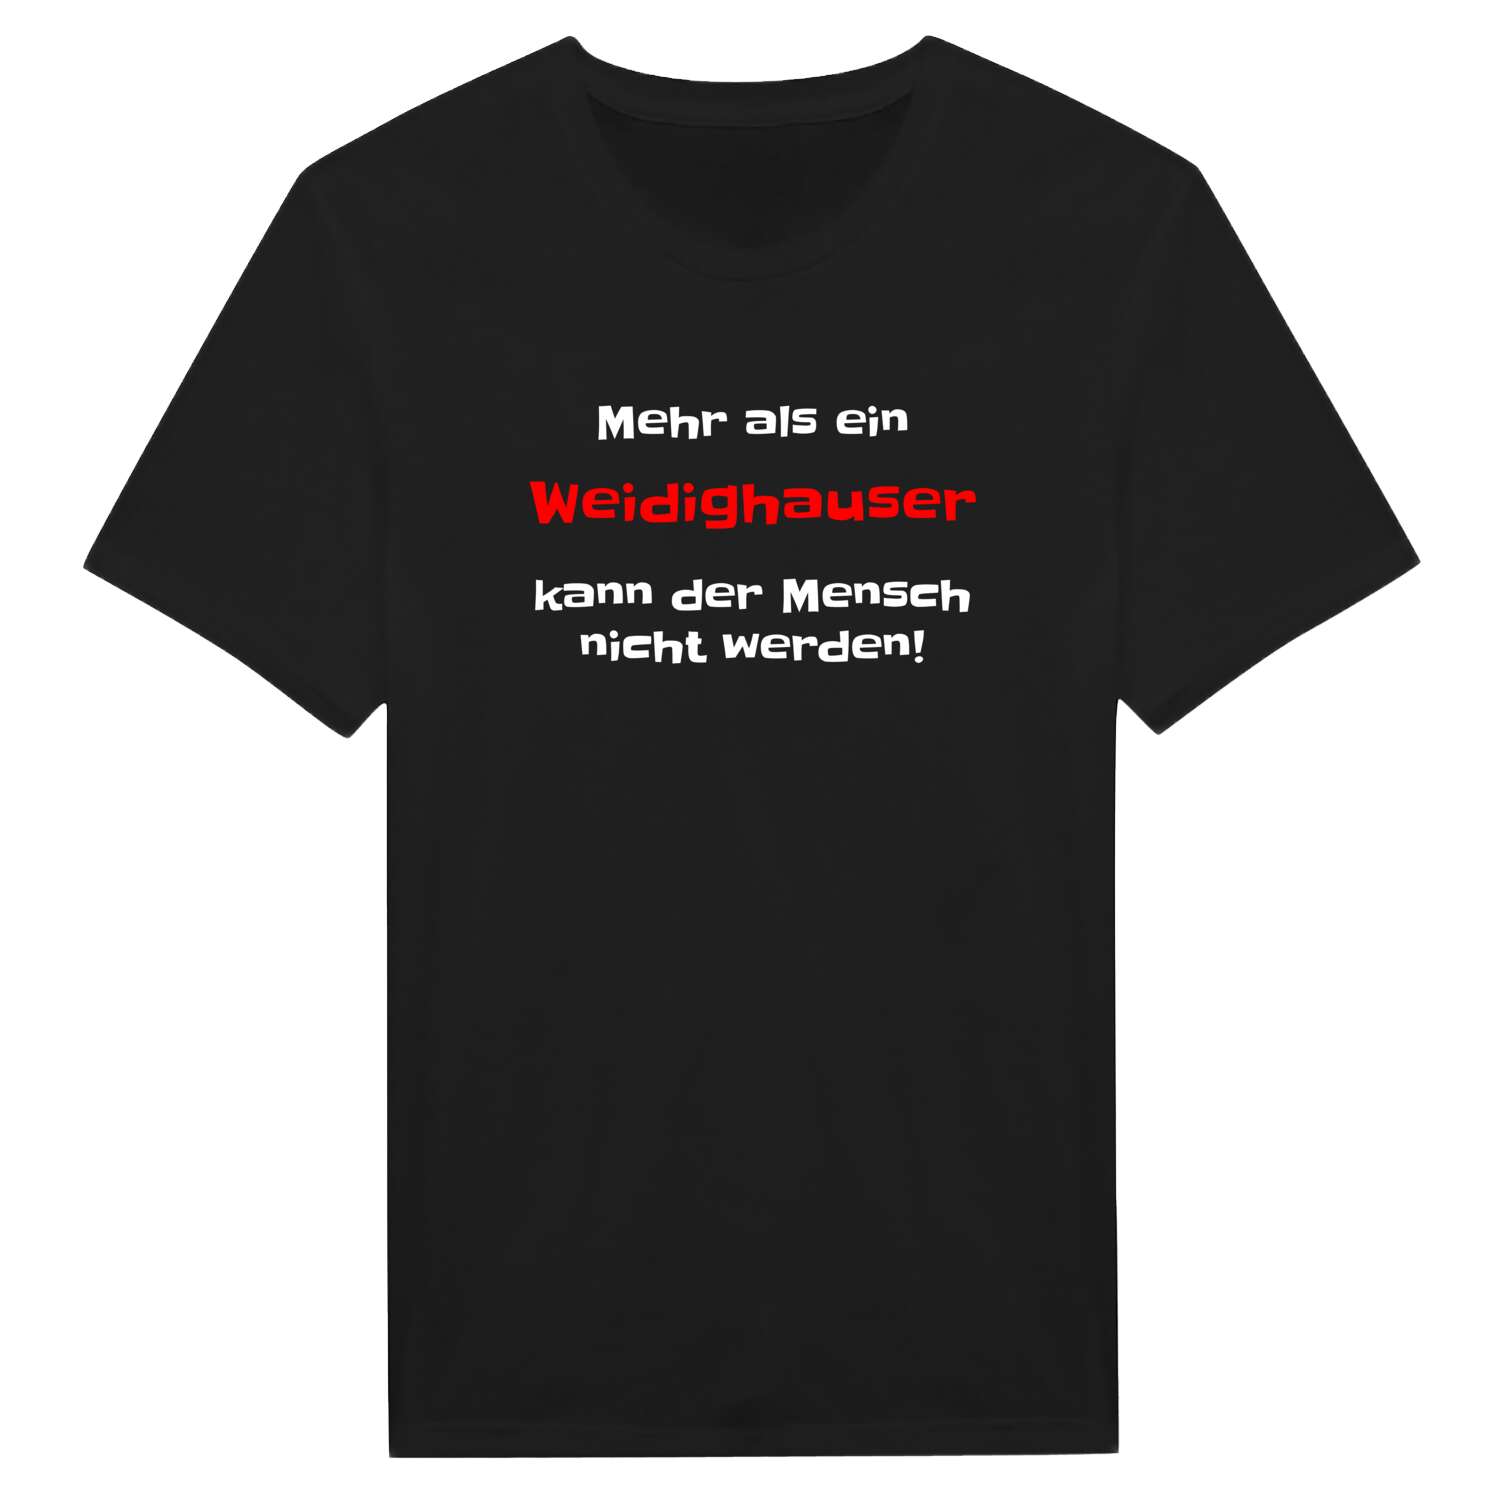 Weidighaus T-Shirt »Mehr als ein«